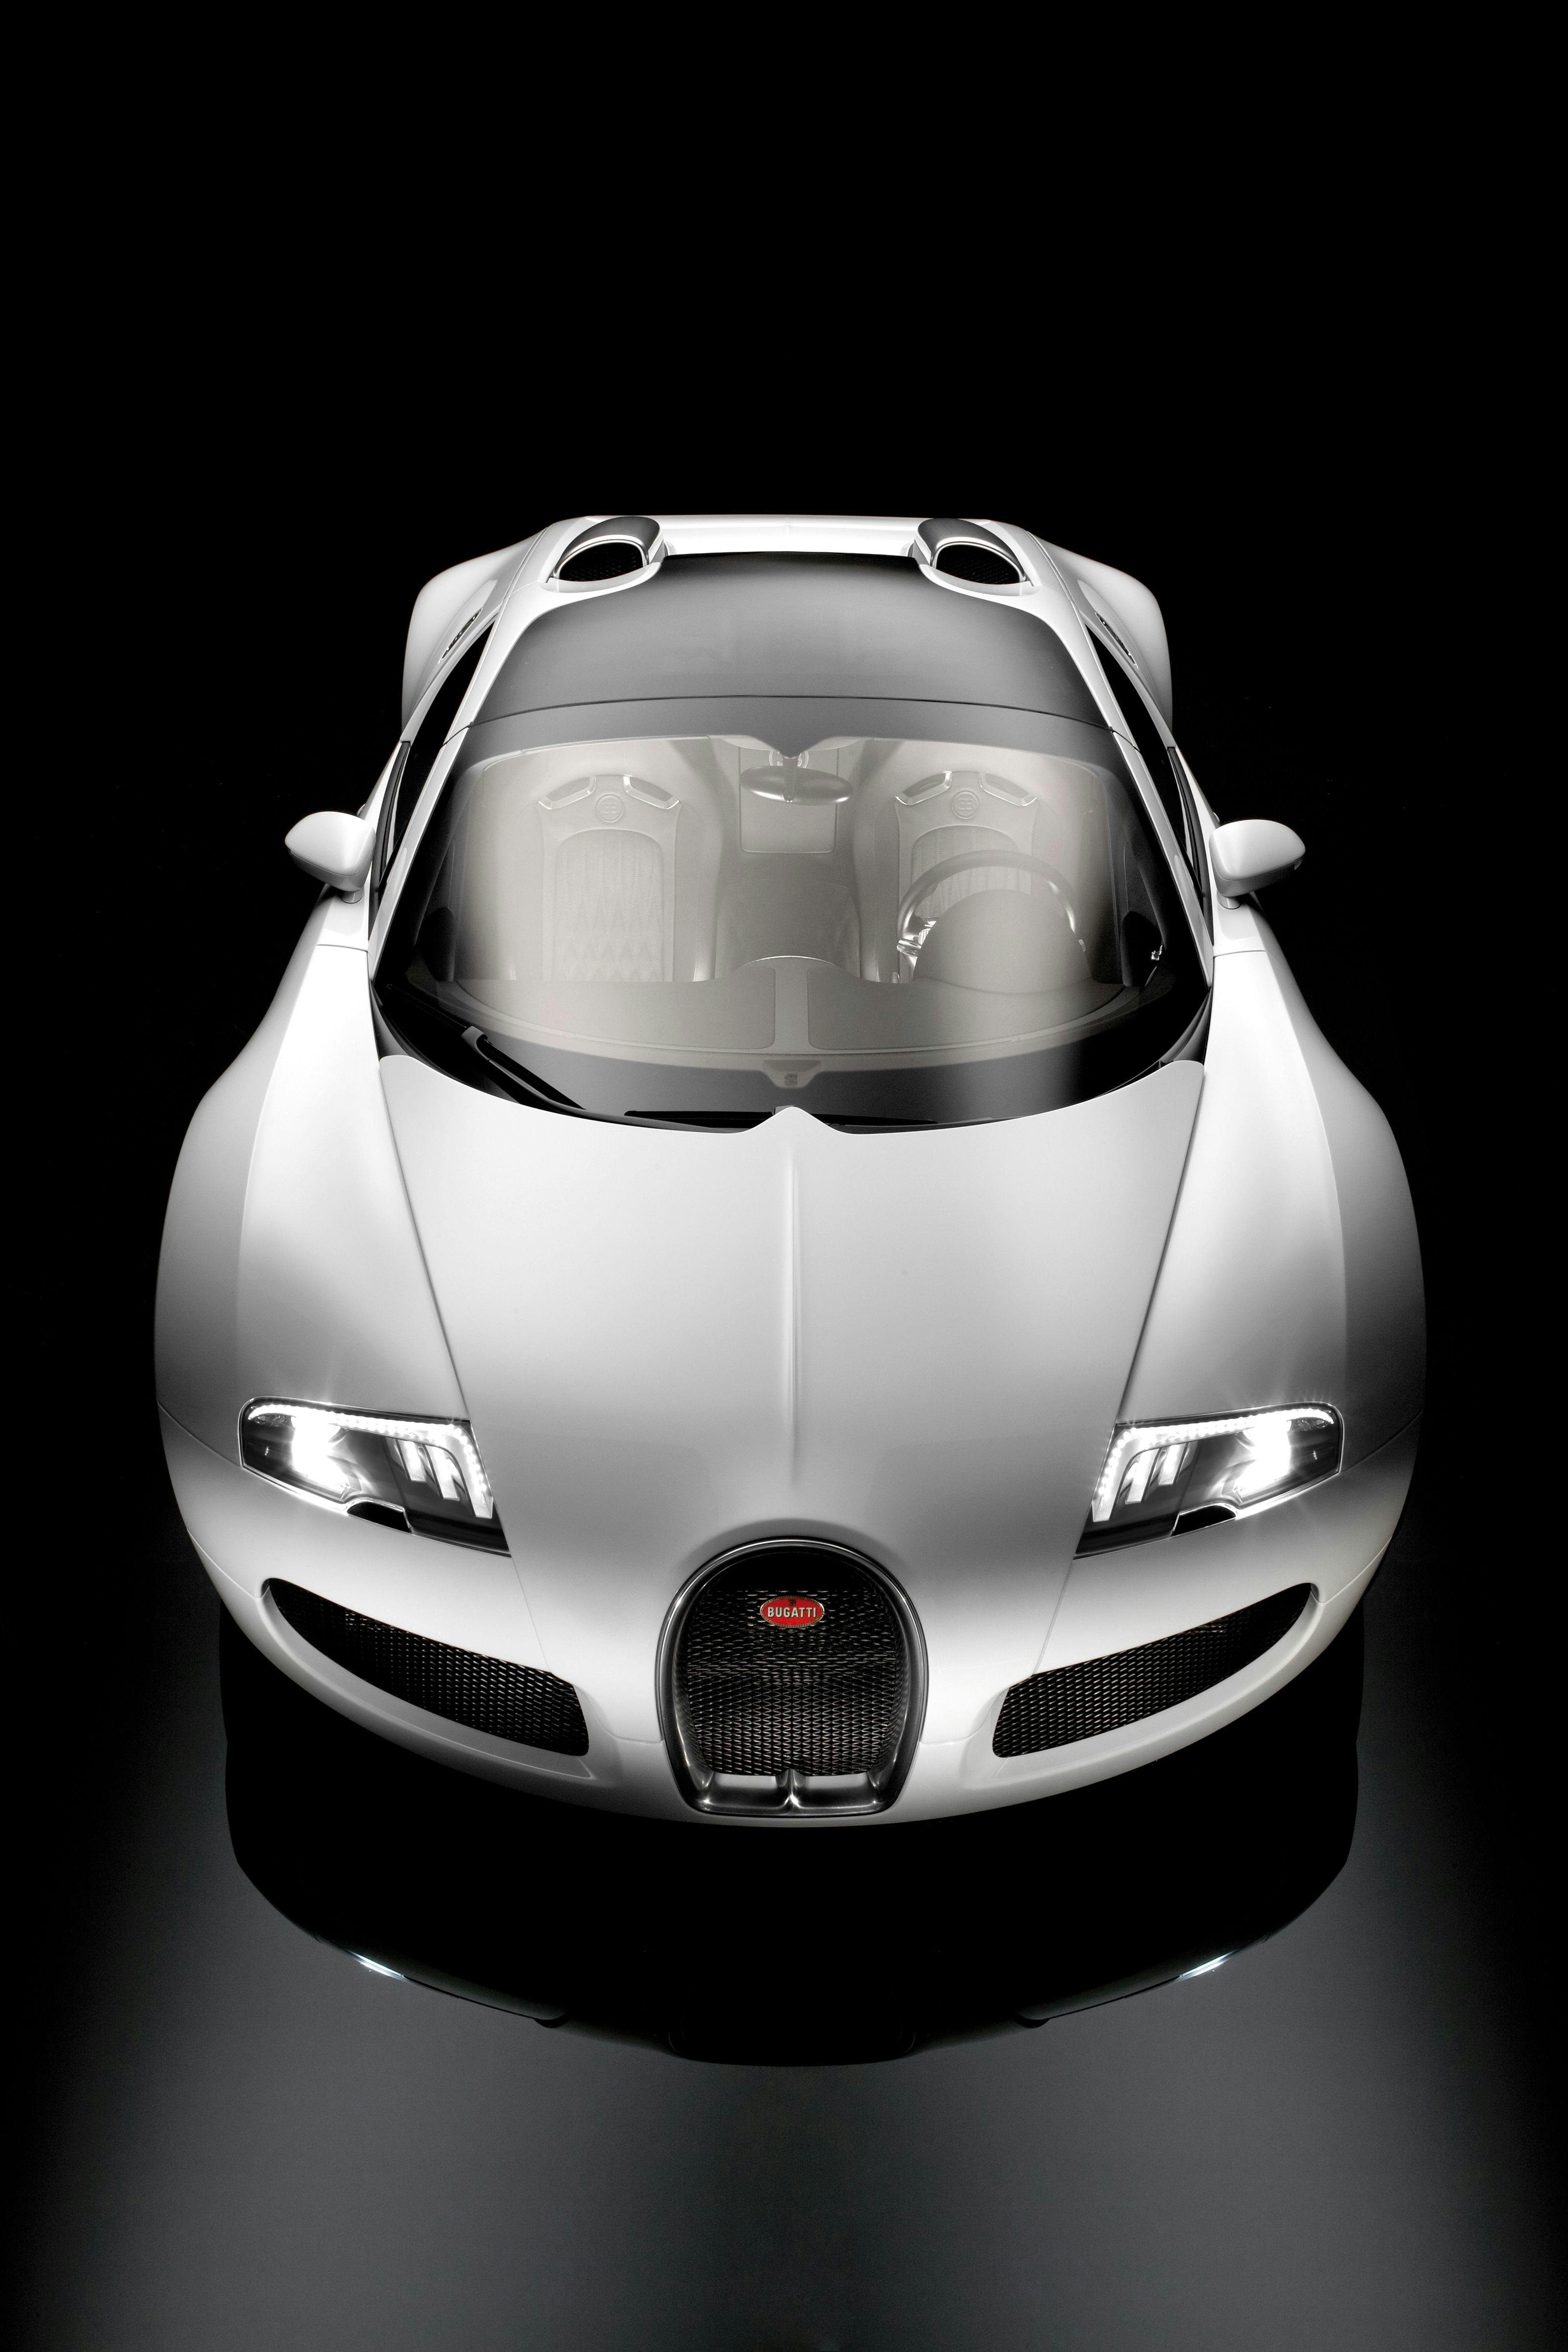 La nouvelle Bugatti Veyron 16.4 s’ouvre au monde